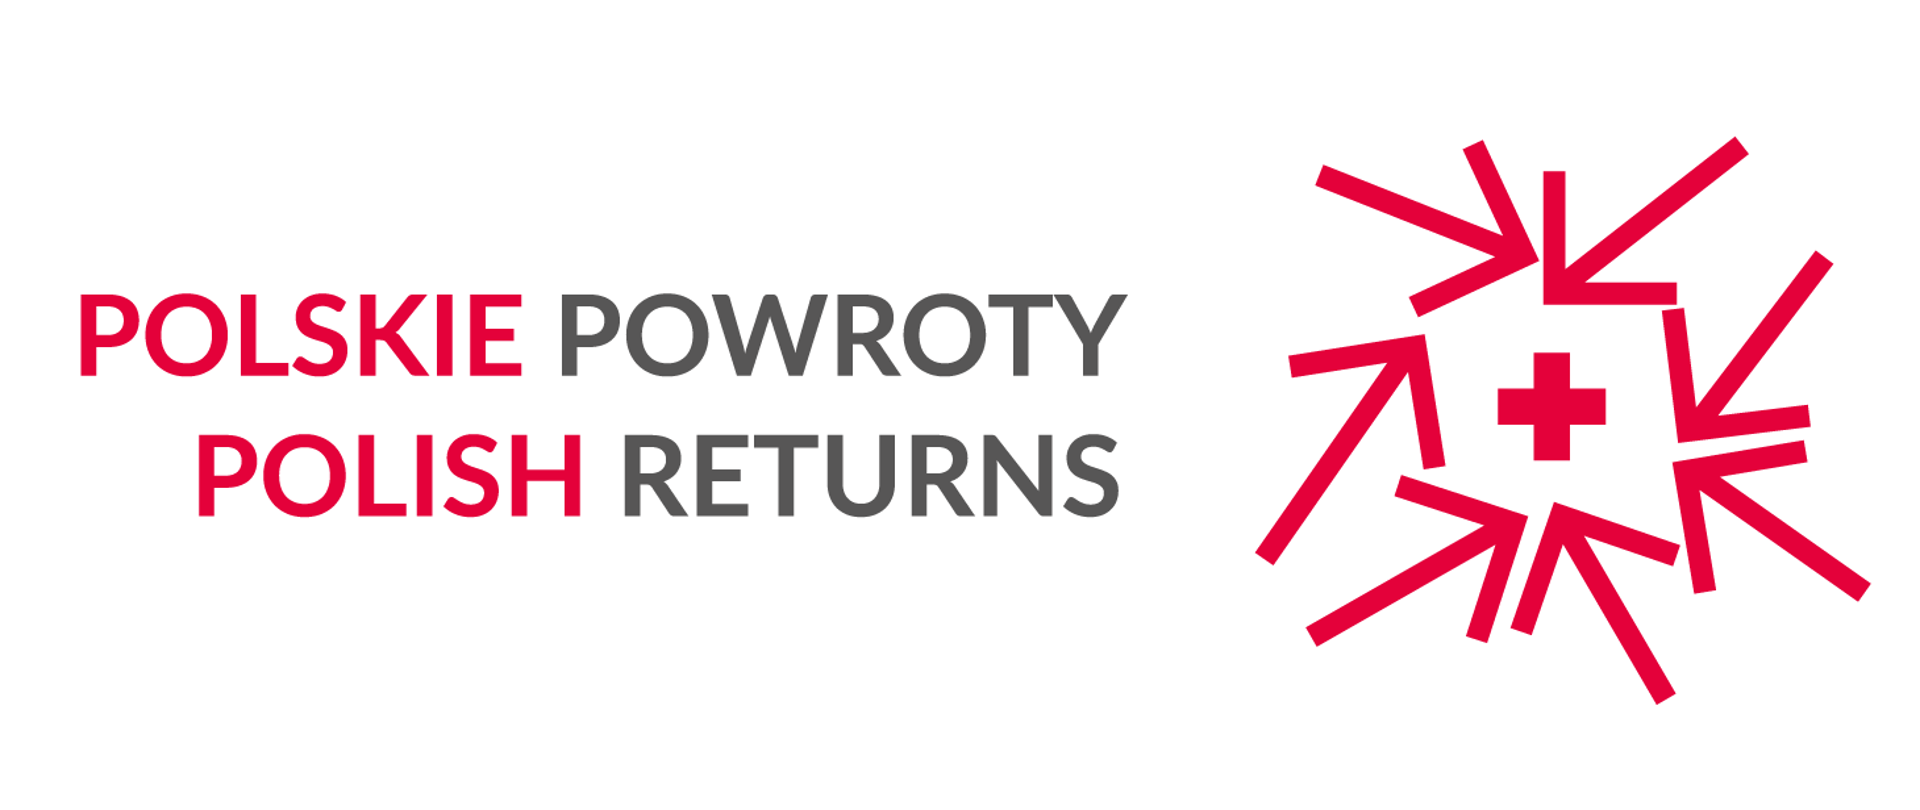 Grafika z napisem Polskie powroty - Polish returns